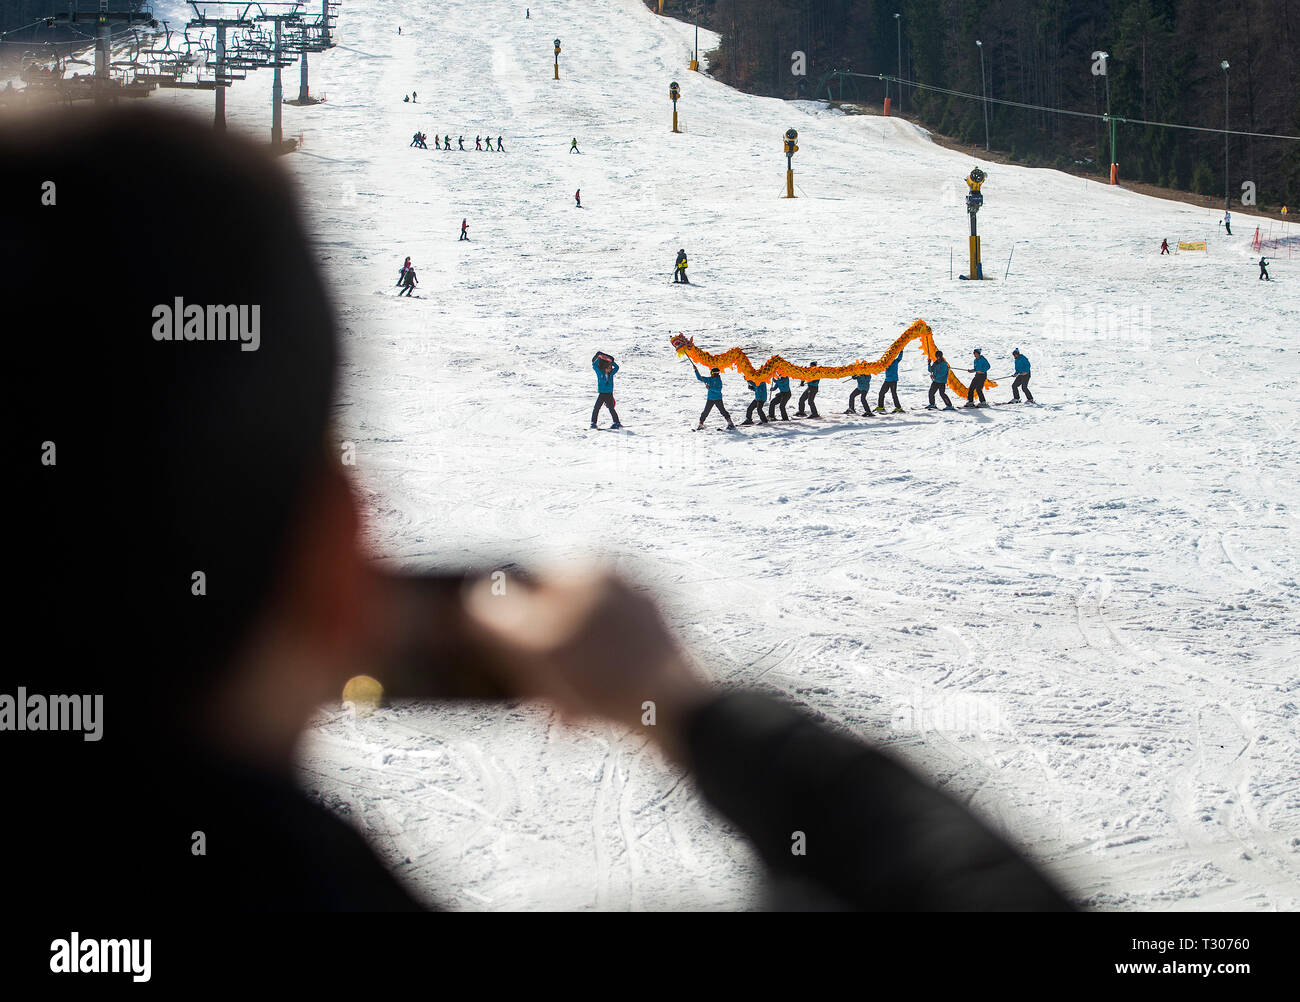 KRANJSKA Gora, Slowenien - 16. MÄRZ 2019: Skifahrer aus einem der Skischule mit dem chinesischen Drachen, zum ersten Mal auf Skiern. Stockfoto